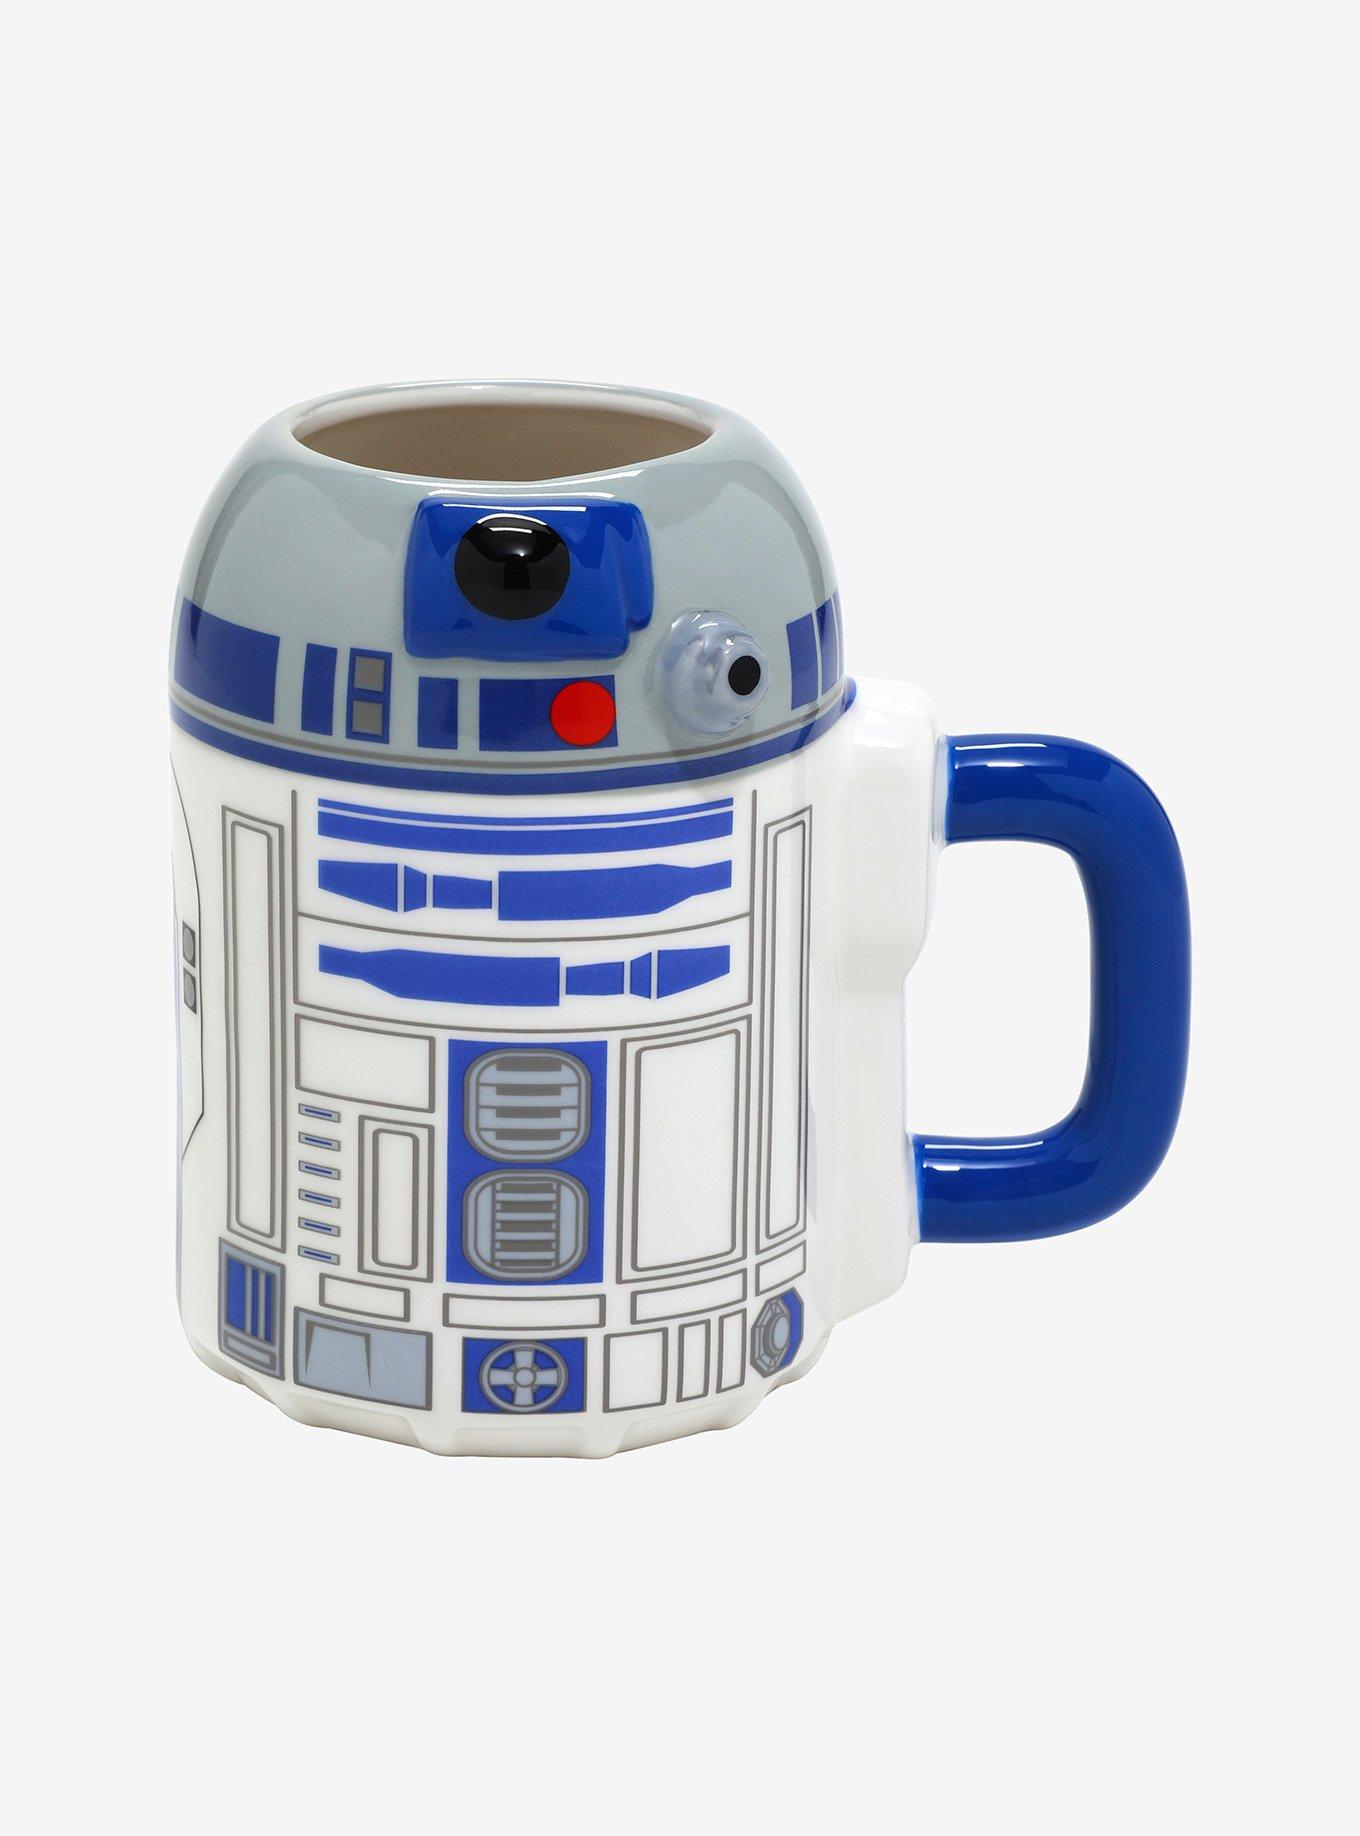 Latte Mug termosensibile R2-D2 e Leila